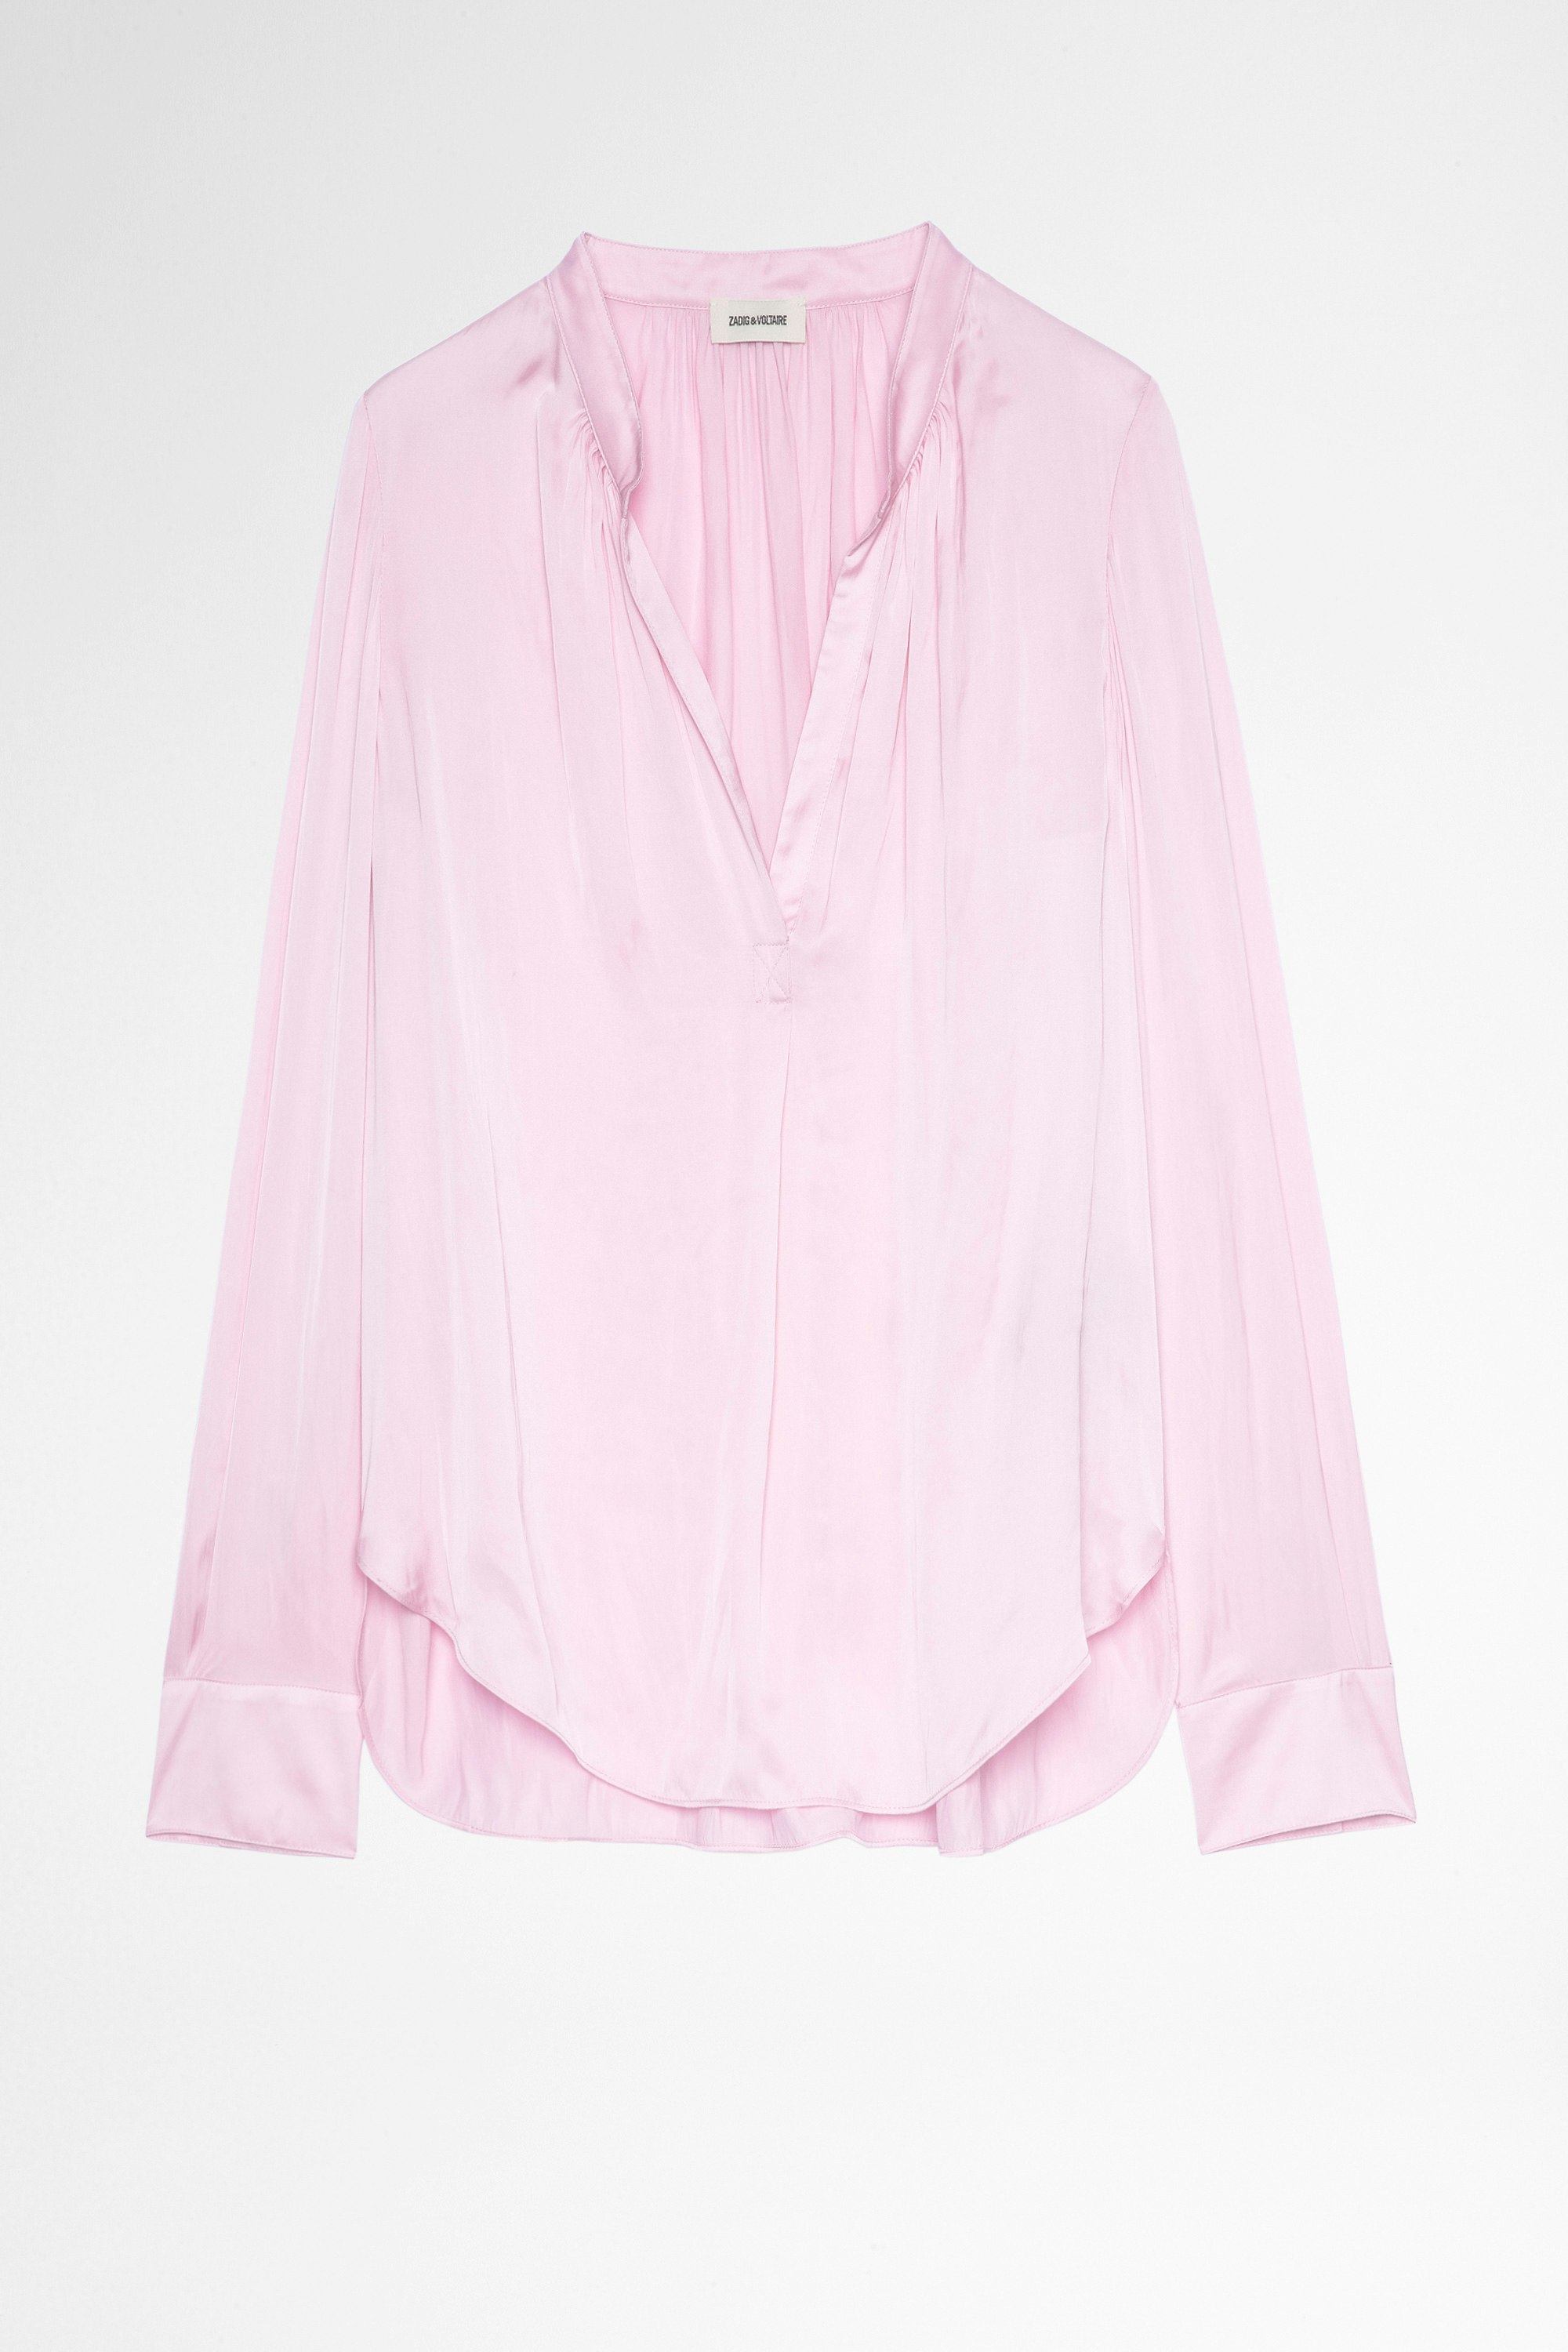 Tink Satin Blouse Women's long-sleeved pink satin shirt